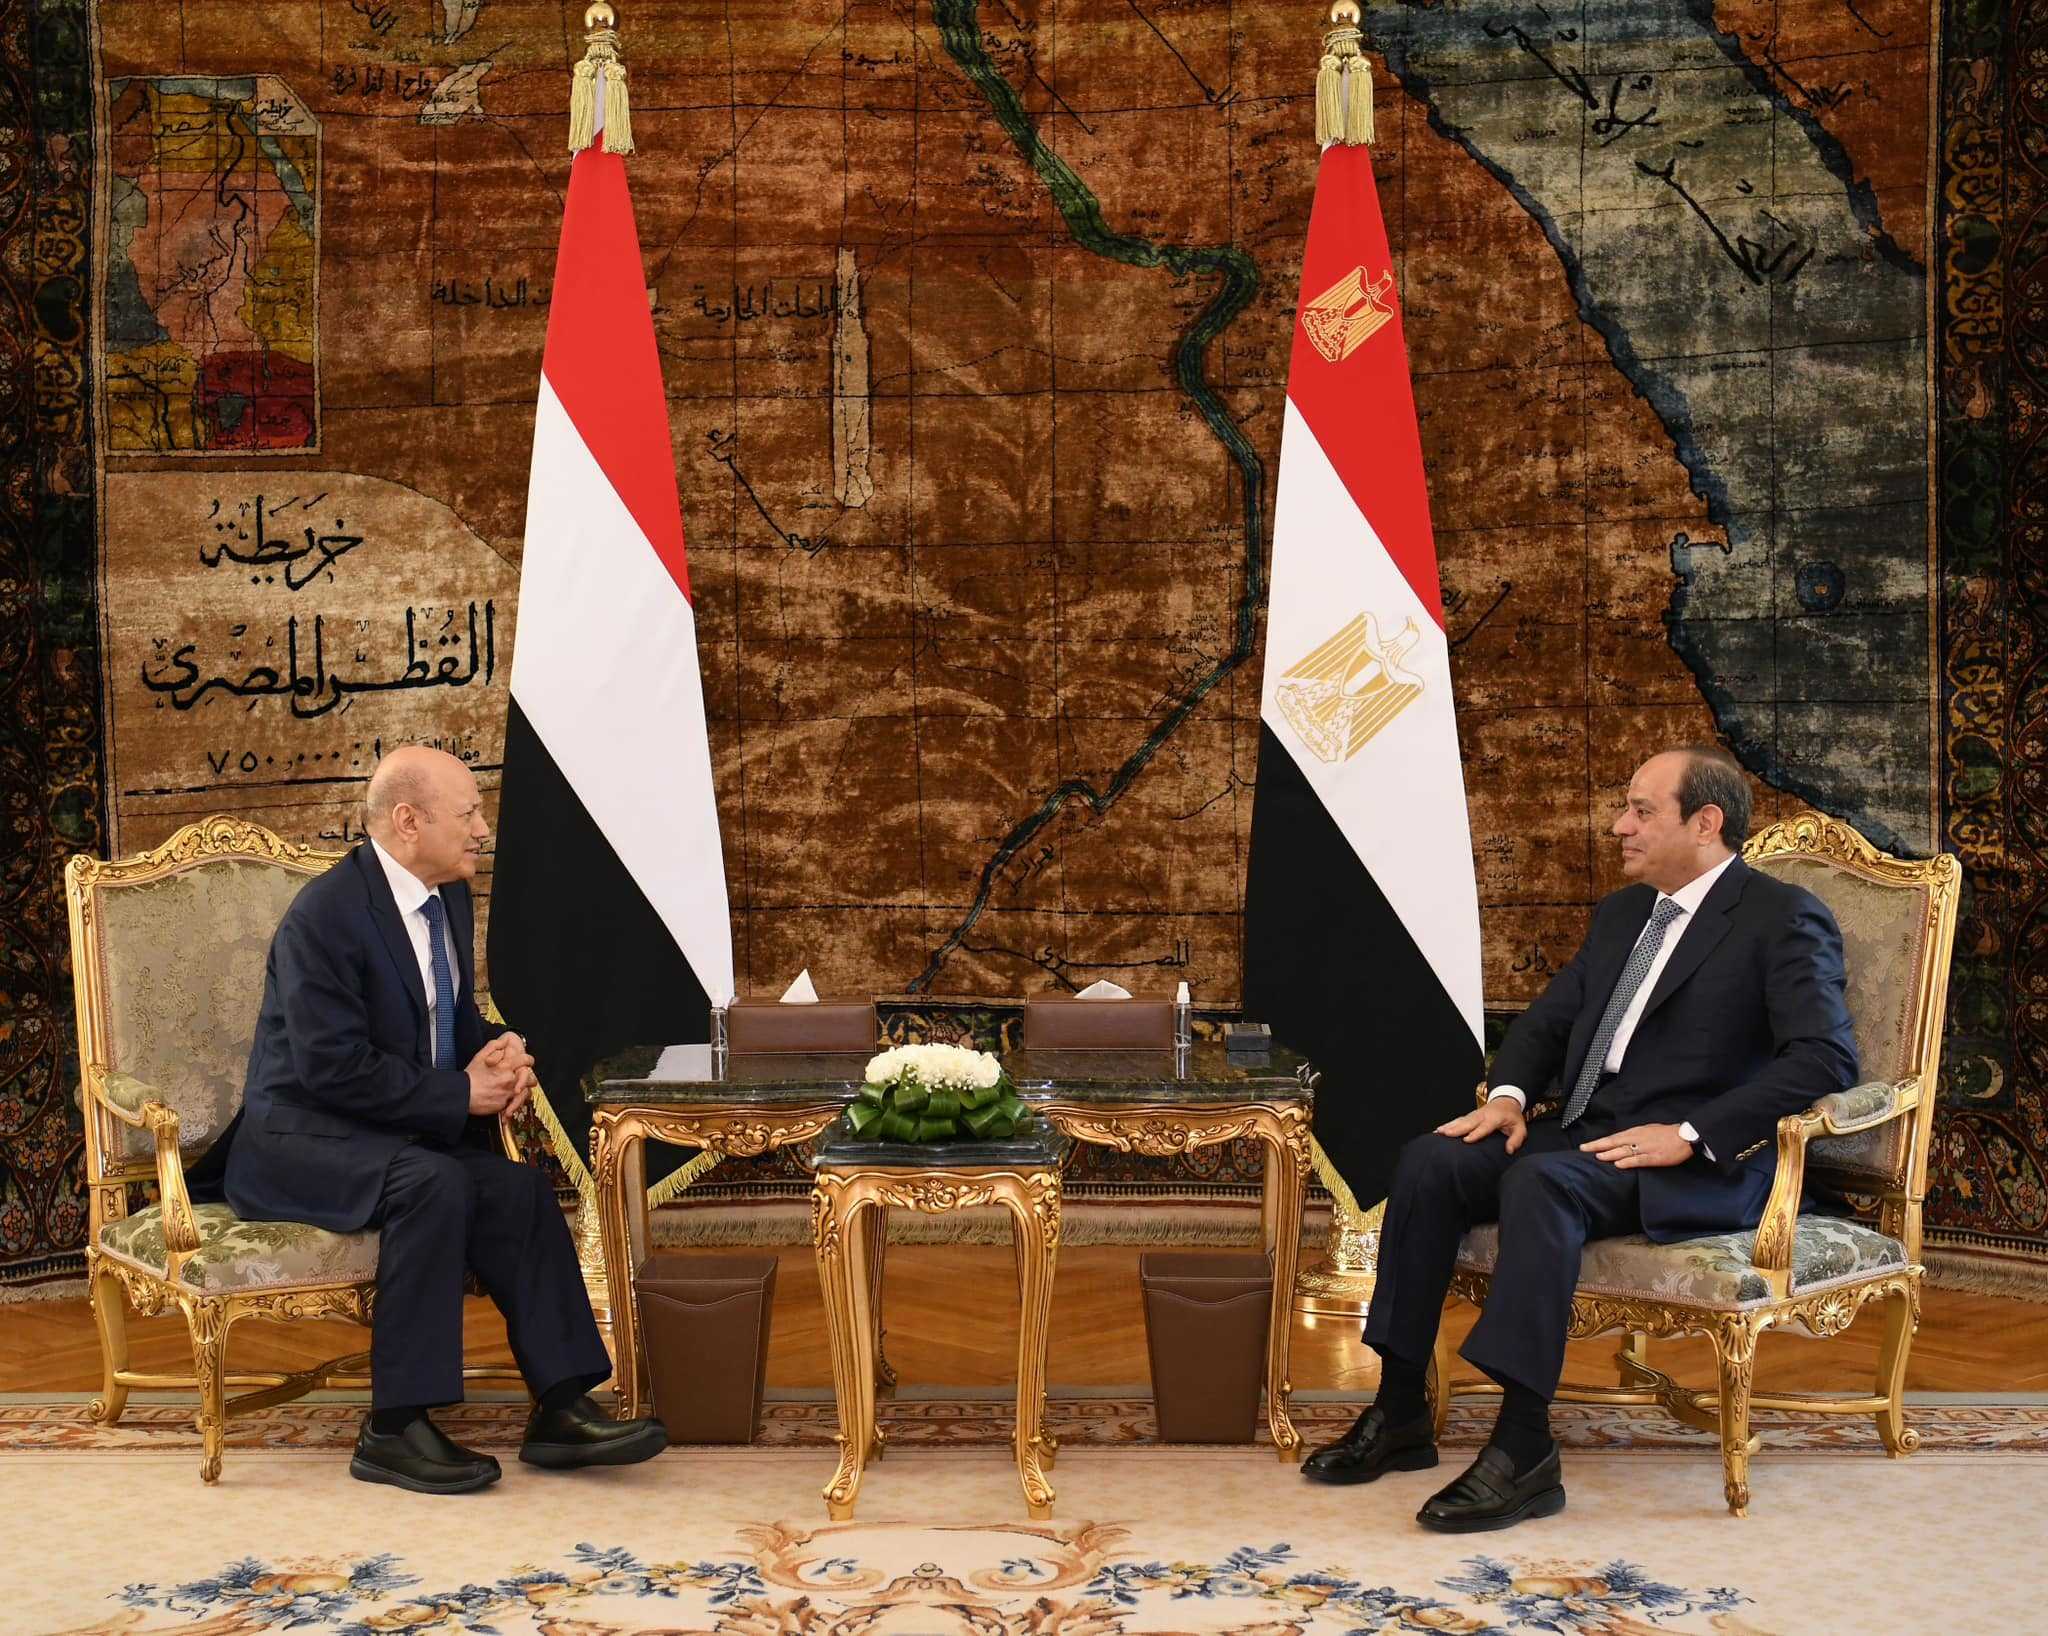 الرئيس السيسي يستقبل رئيس مجلس القيادة الرئاسي اليمني